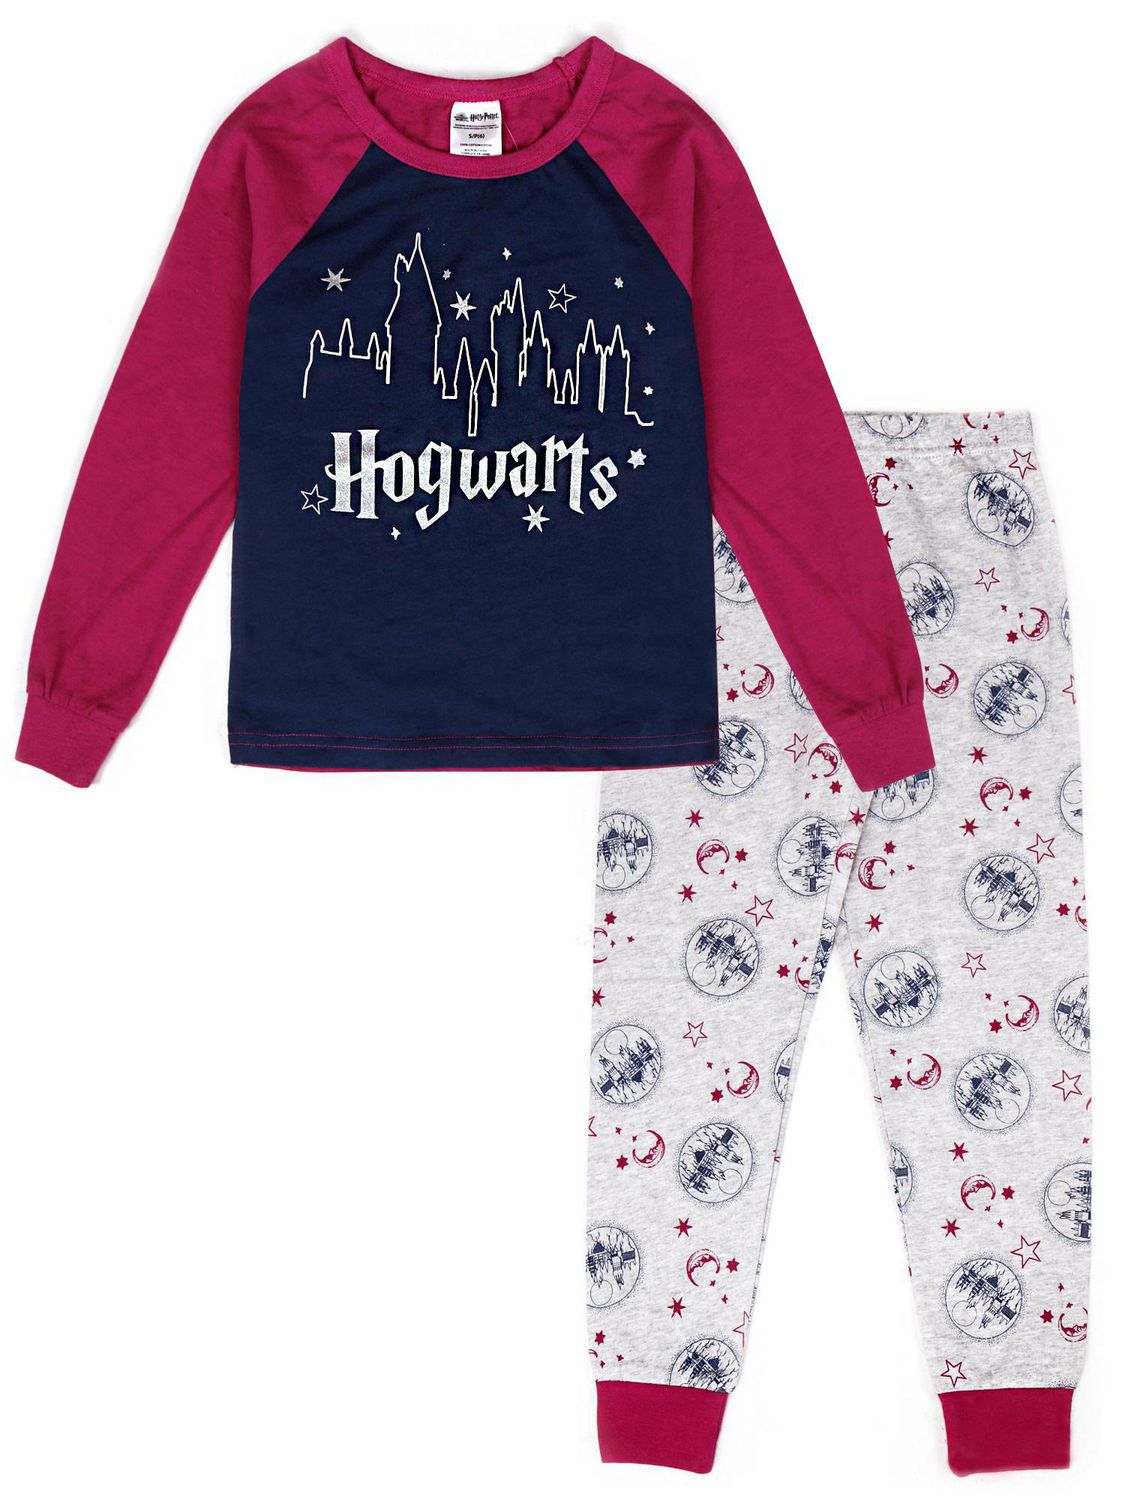 Harry Potter two piece pyjama set for girls | Walmart Canada